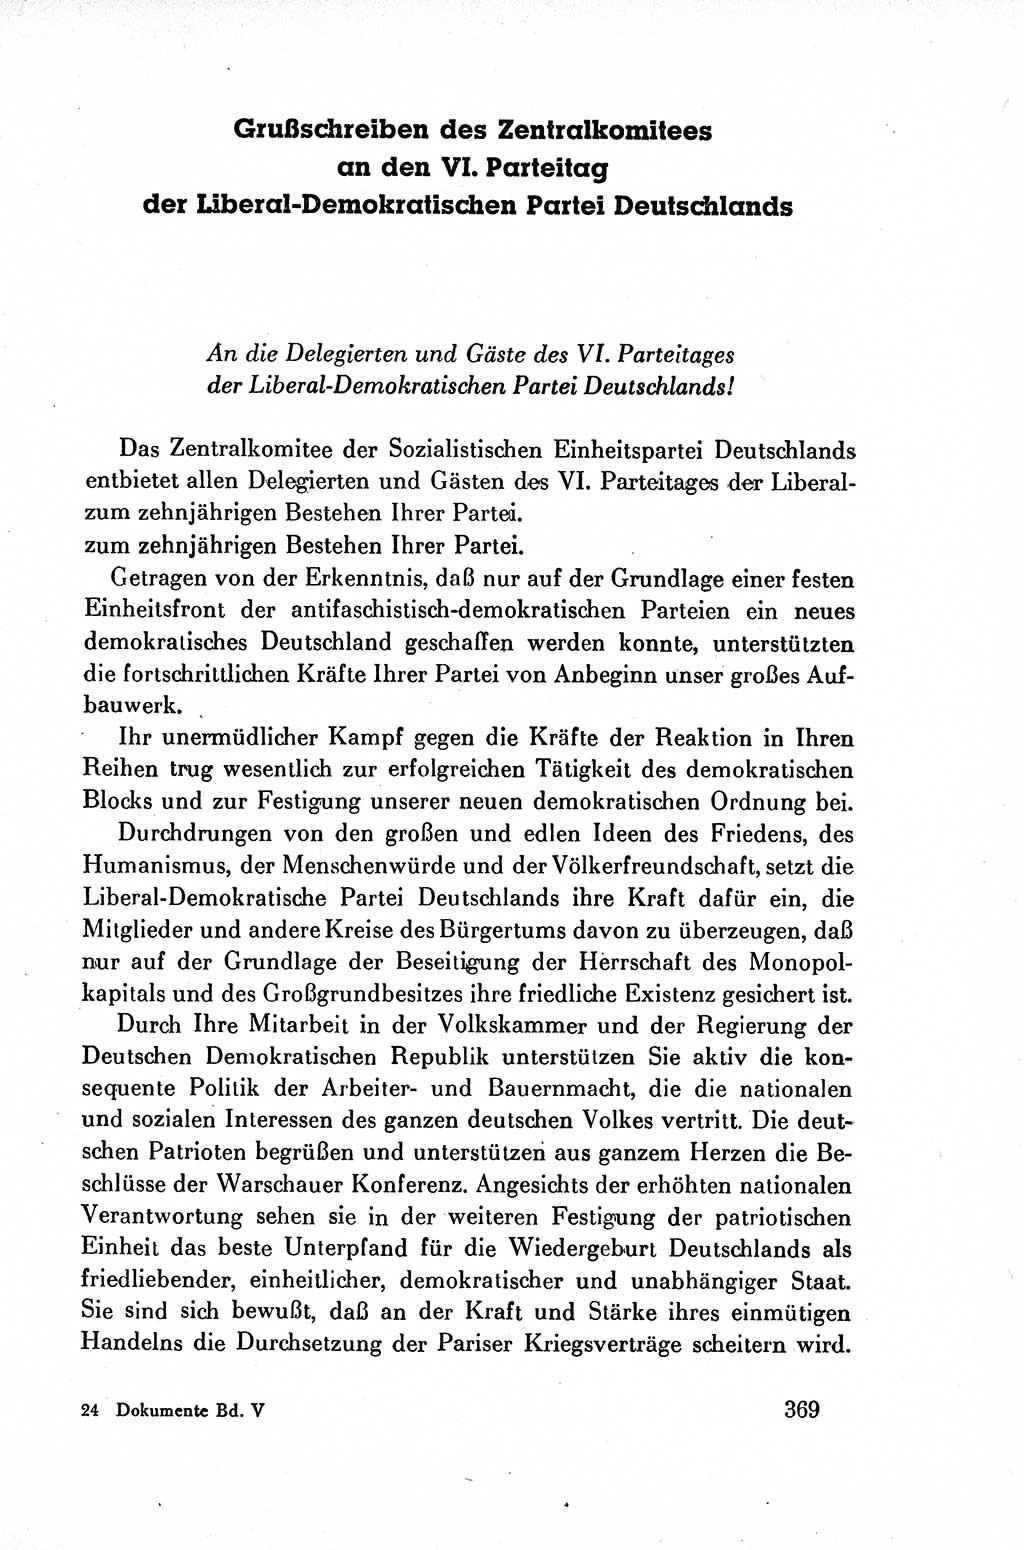 Dokumente der Sozialistischen Einheitspartei Deutschlands (SED) [Deutsche Demokratische Republik (DDR)] 1954-1955, Seite 369 (Dok. SED DDR 1954-1955, S. 369)